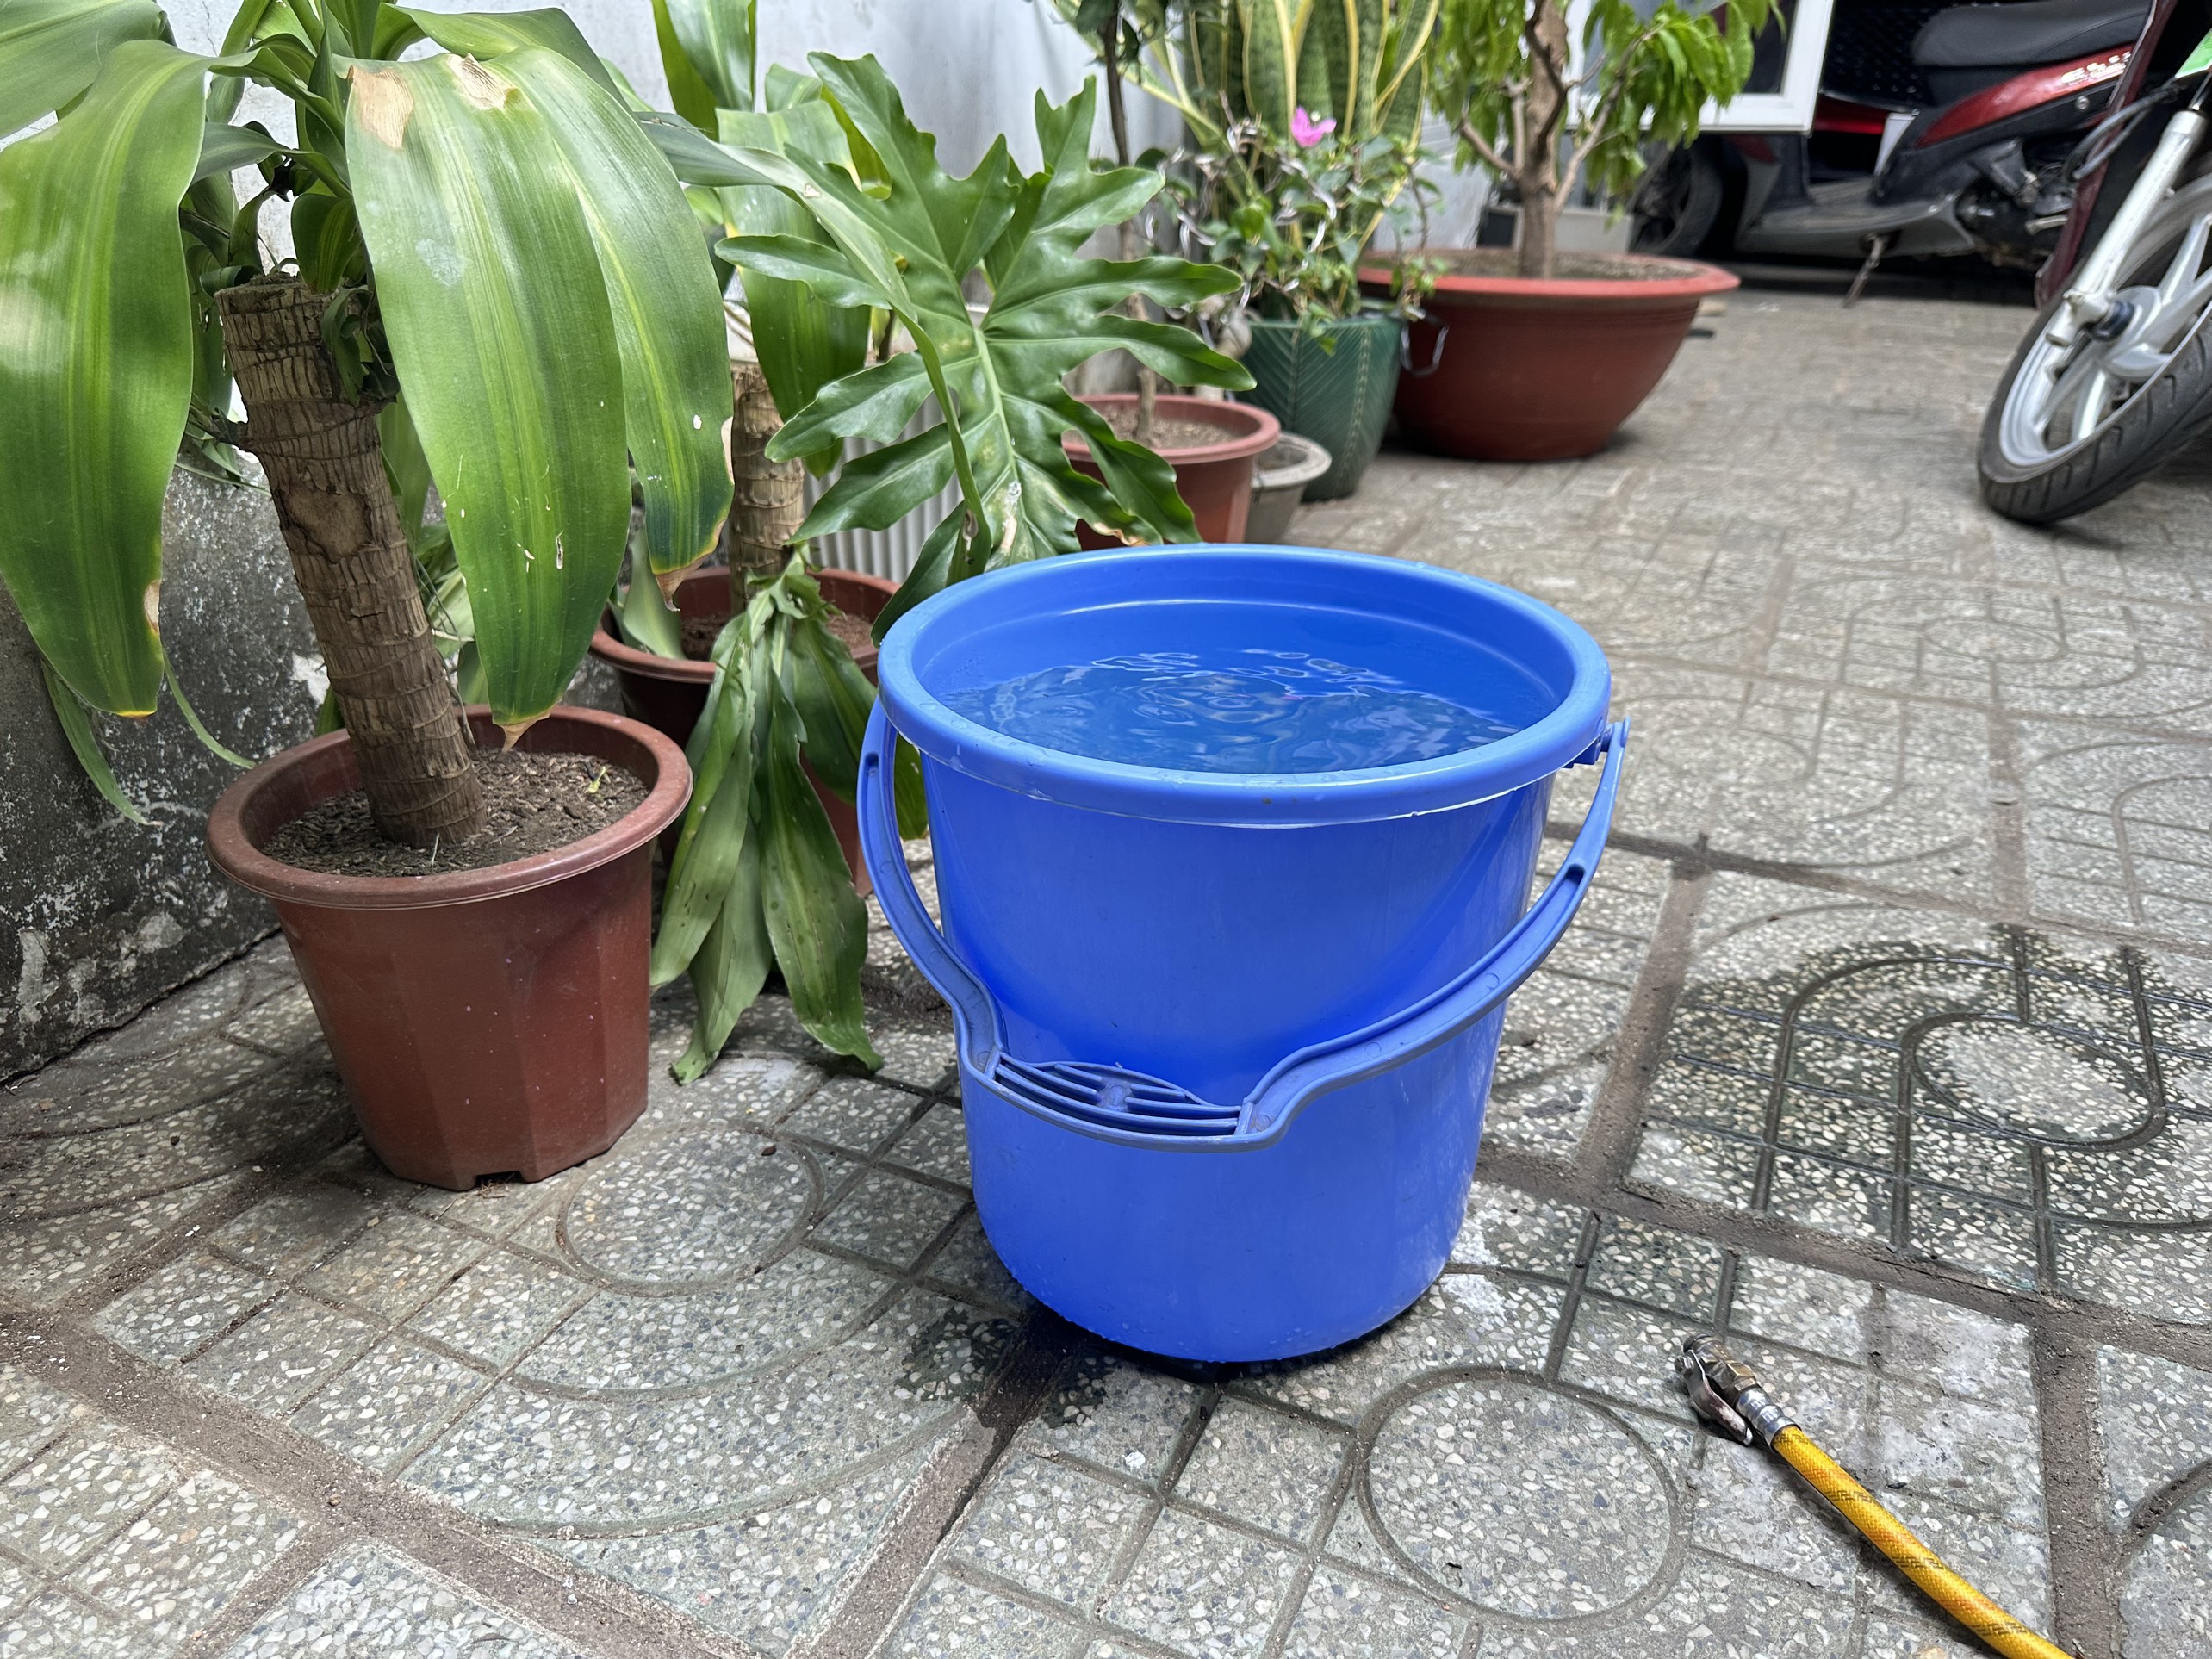 Một nhà máy nước ở Lâm Đồng phải tạm ngừng cấp nước trong thị trấn do khô hạn- Ảnh 4.